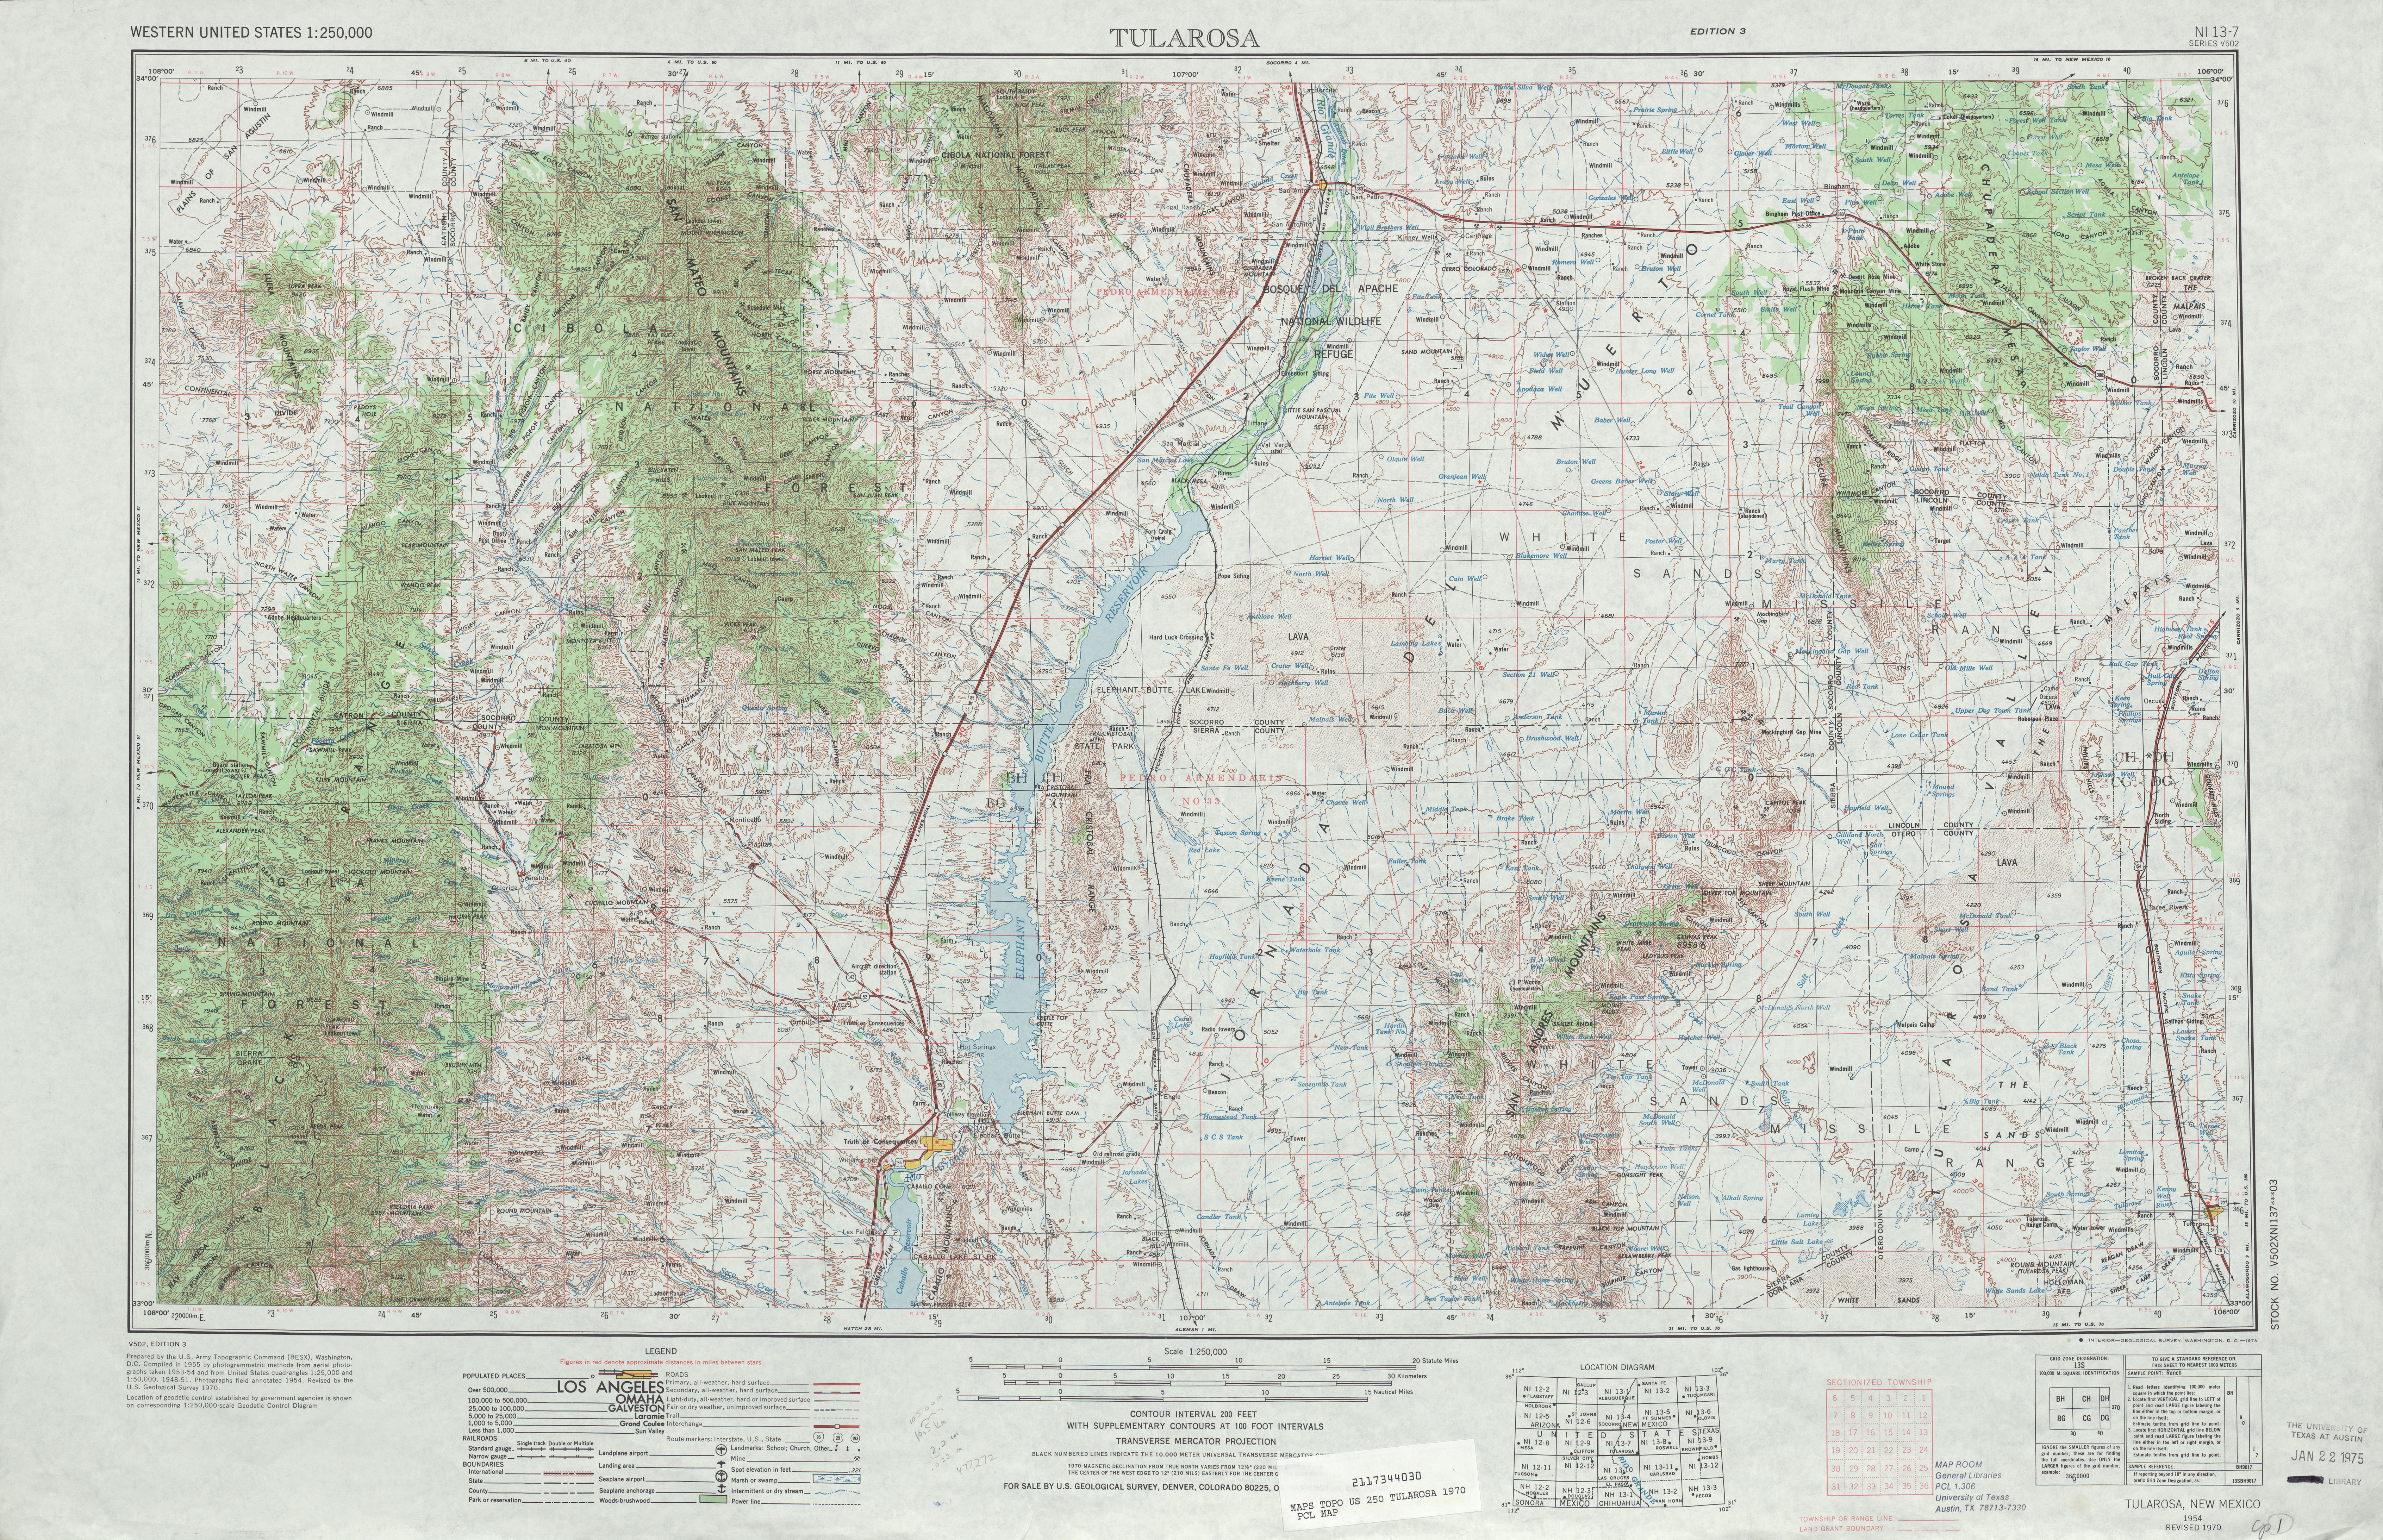 Hoja Tularosa del Mapa Topográfico de los Estados Unidos 1970